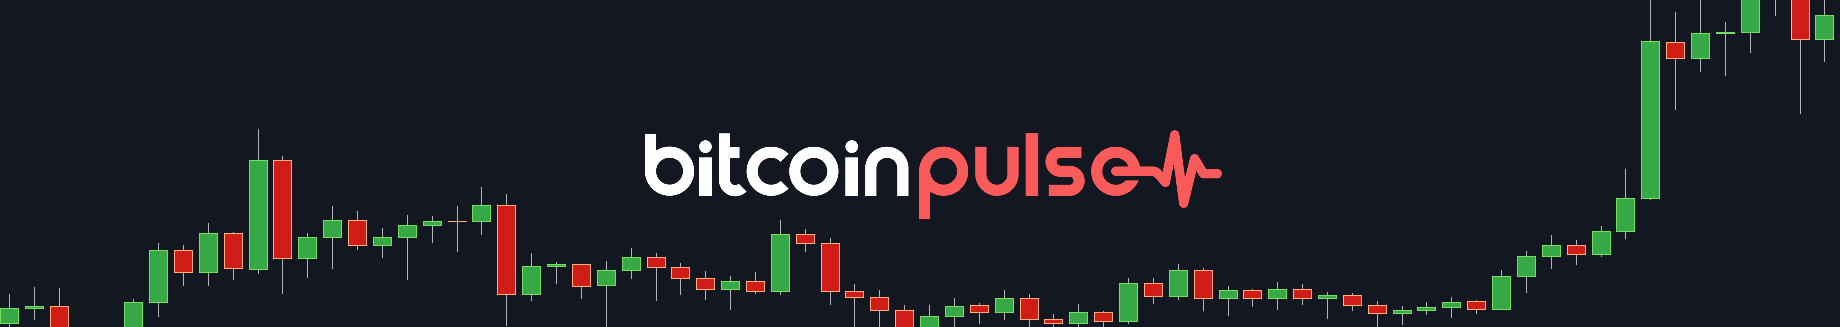 Bitcoin Pulse #119